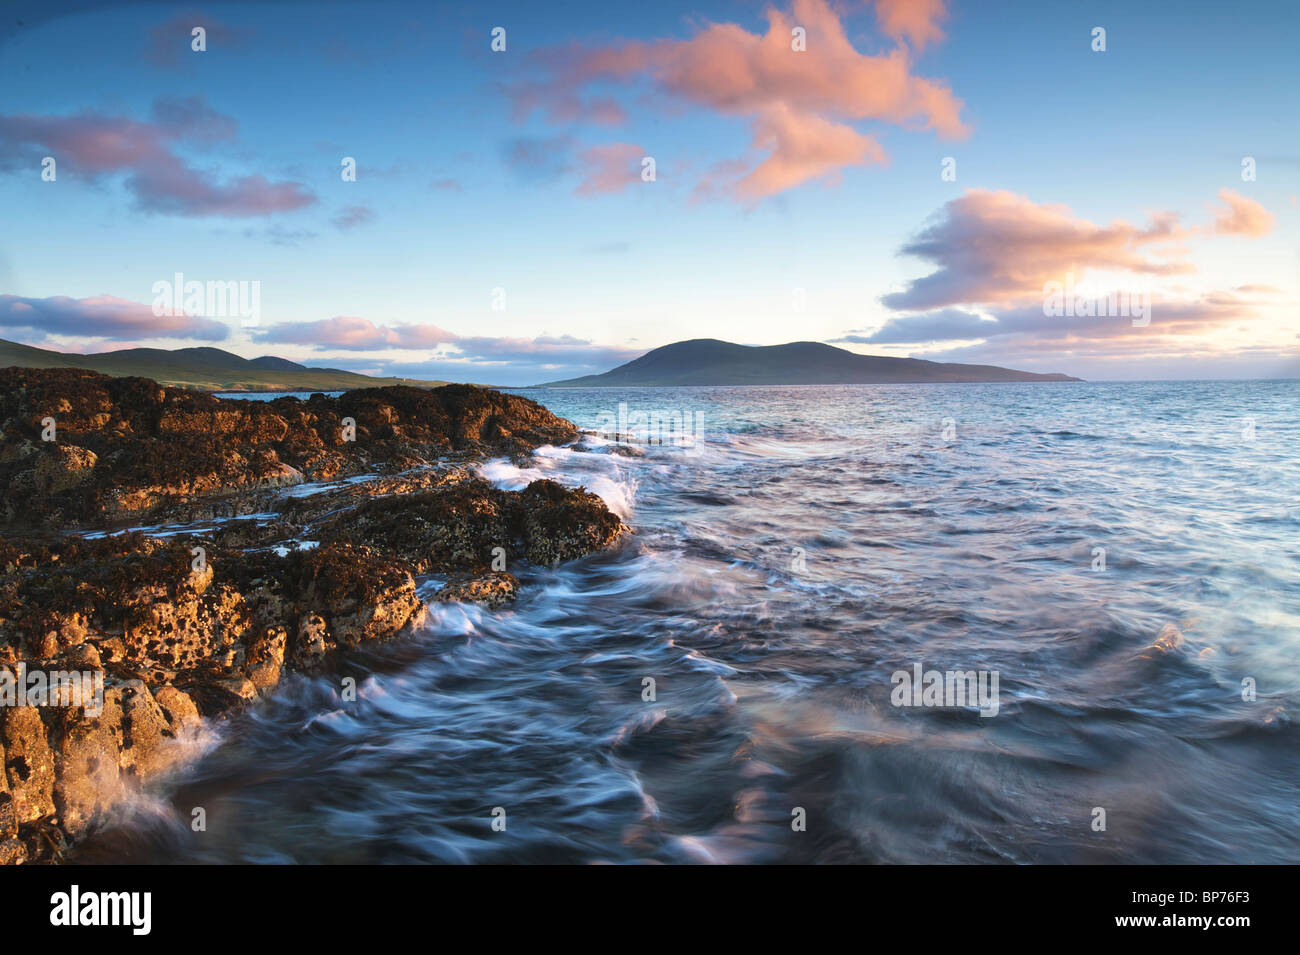 Ziegen Toe Northton Insel Harris äußeren Hebredies Schottland Sonnenuntergang Landschaft Meer Scape Bewegung Stockfoto